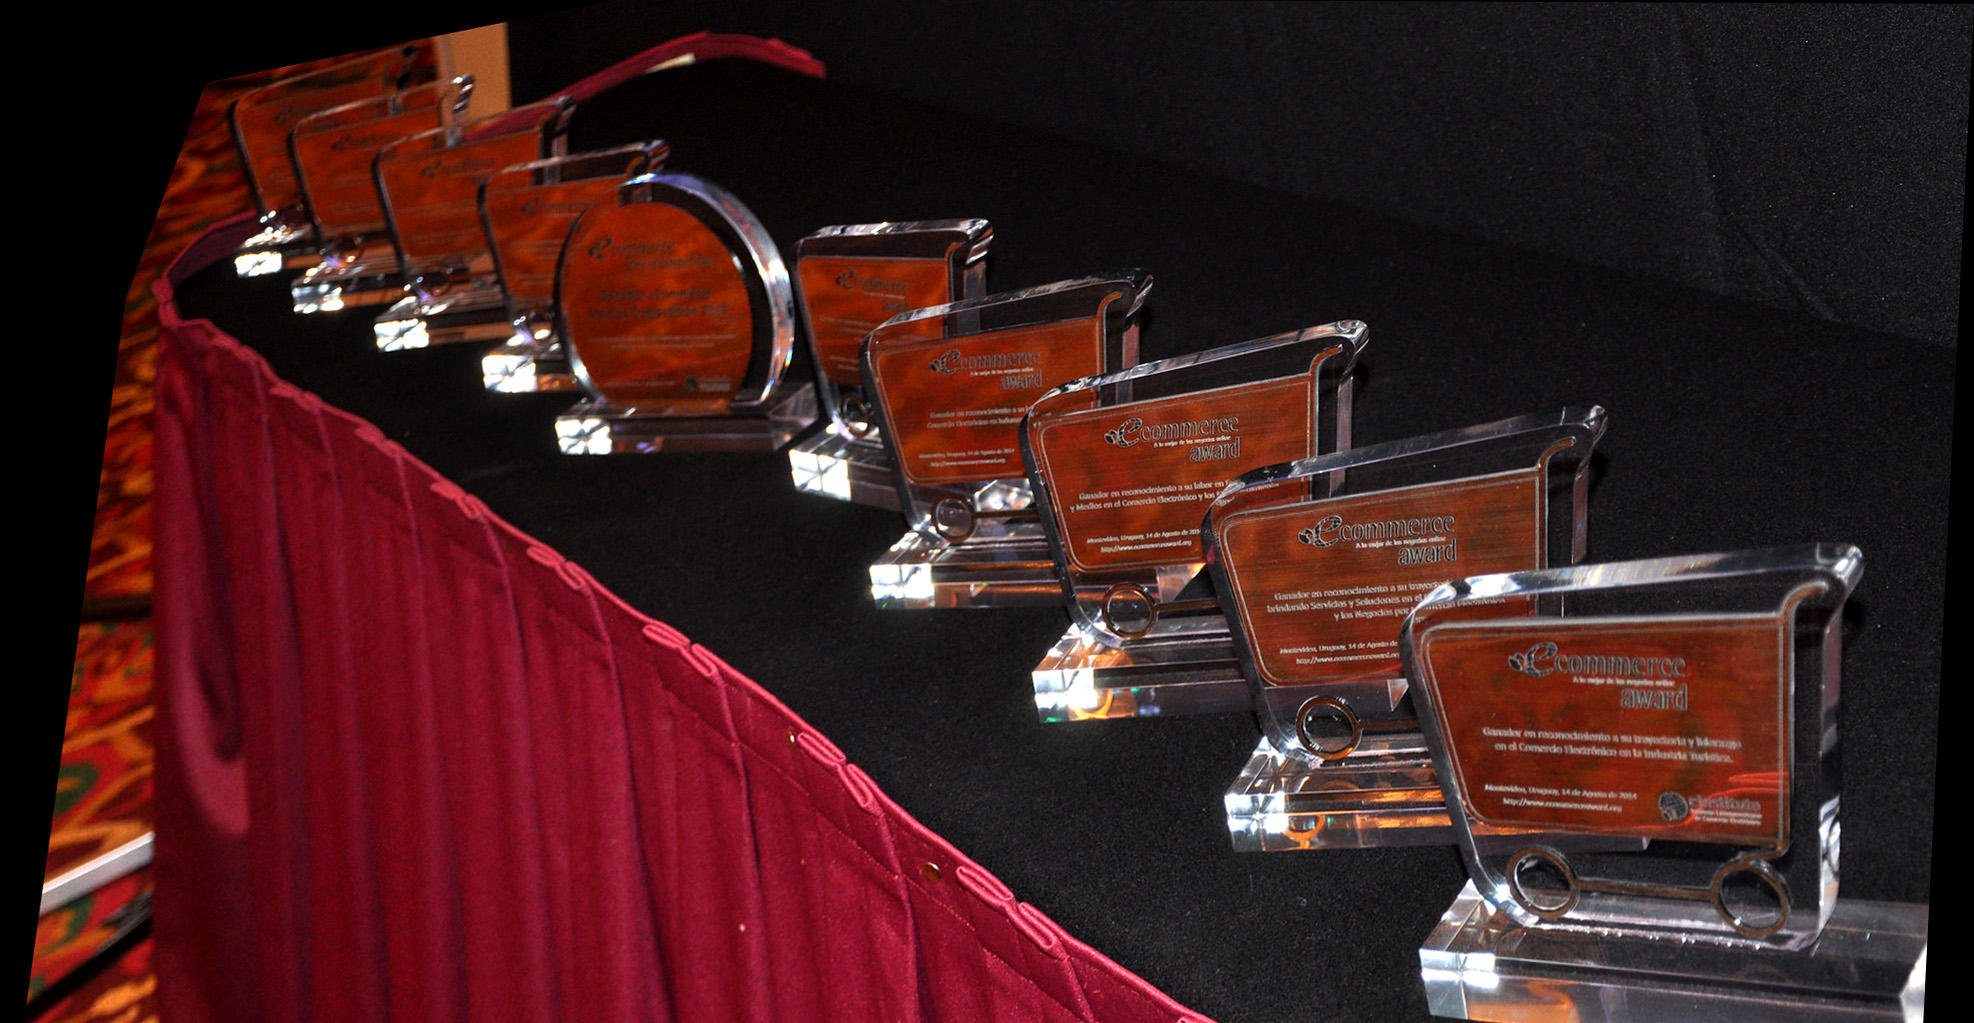 Se dieron a conocer los Ganadores de los eCommerce Awards LatAm 2014